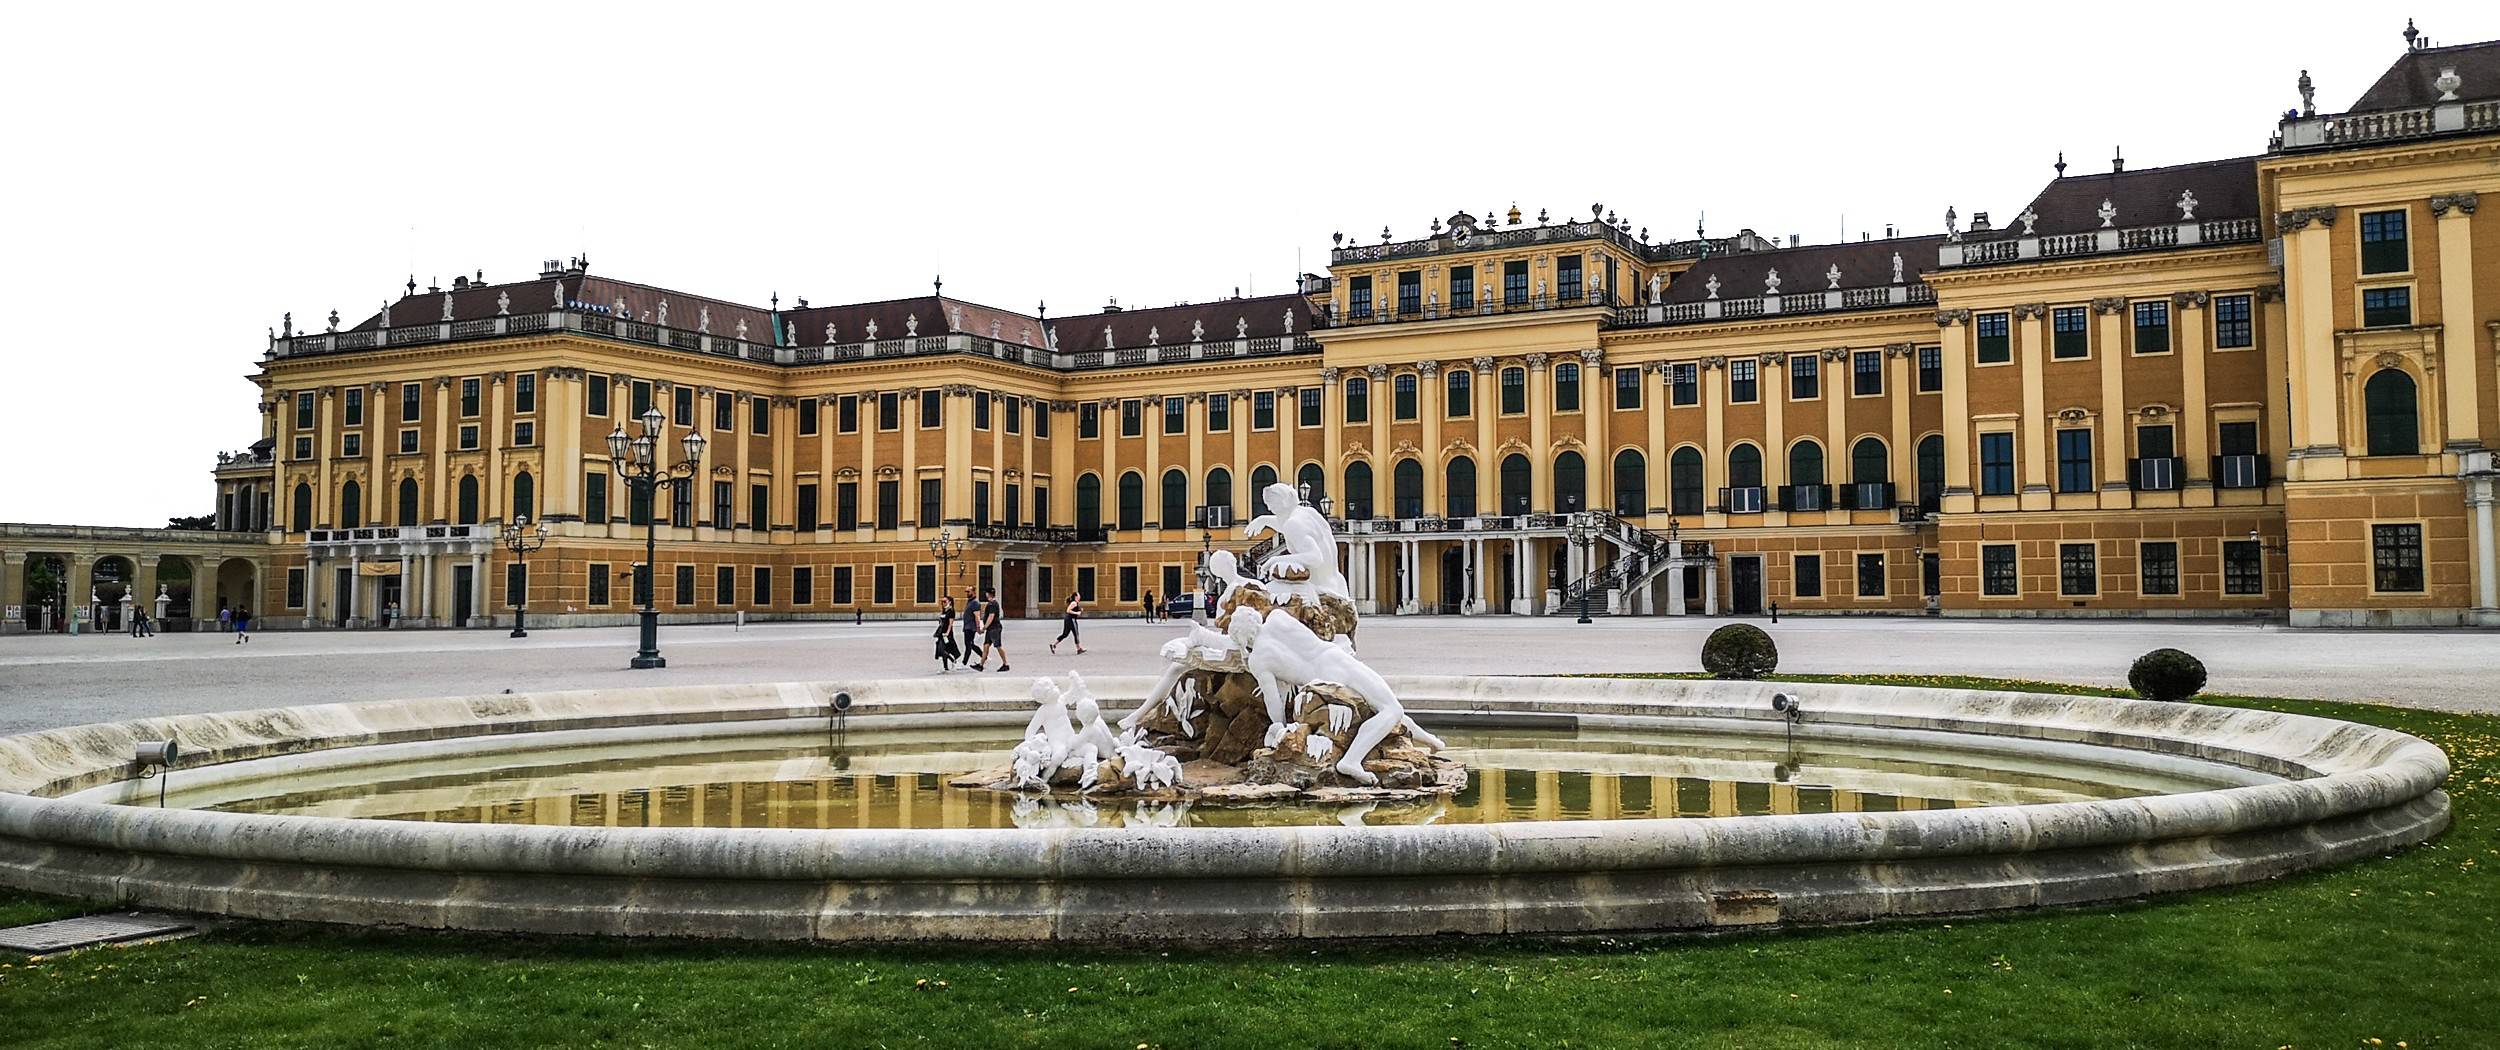 Ehrenhof fountain of Schönbrunn Palace, Vienna